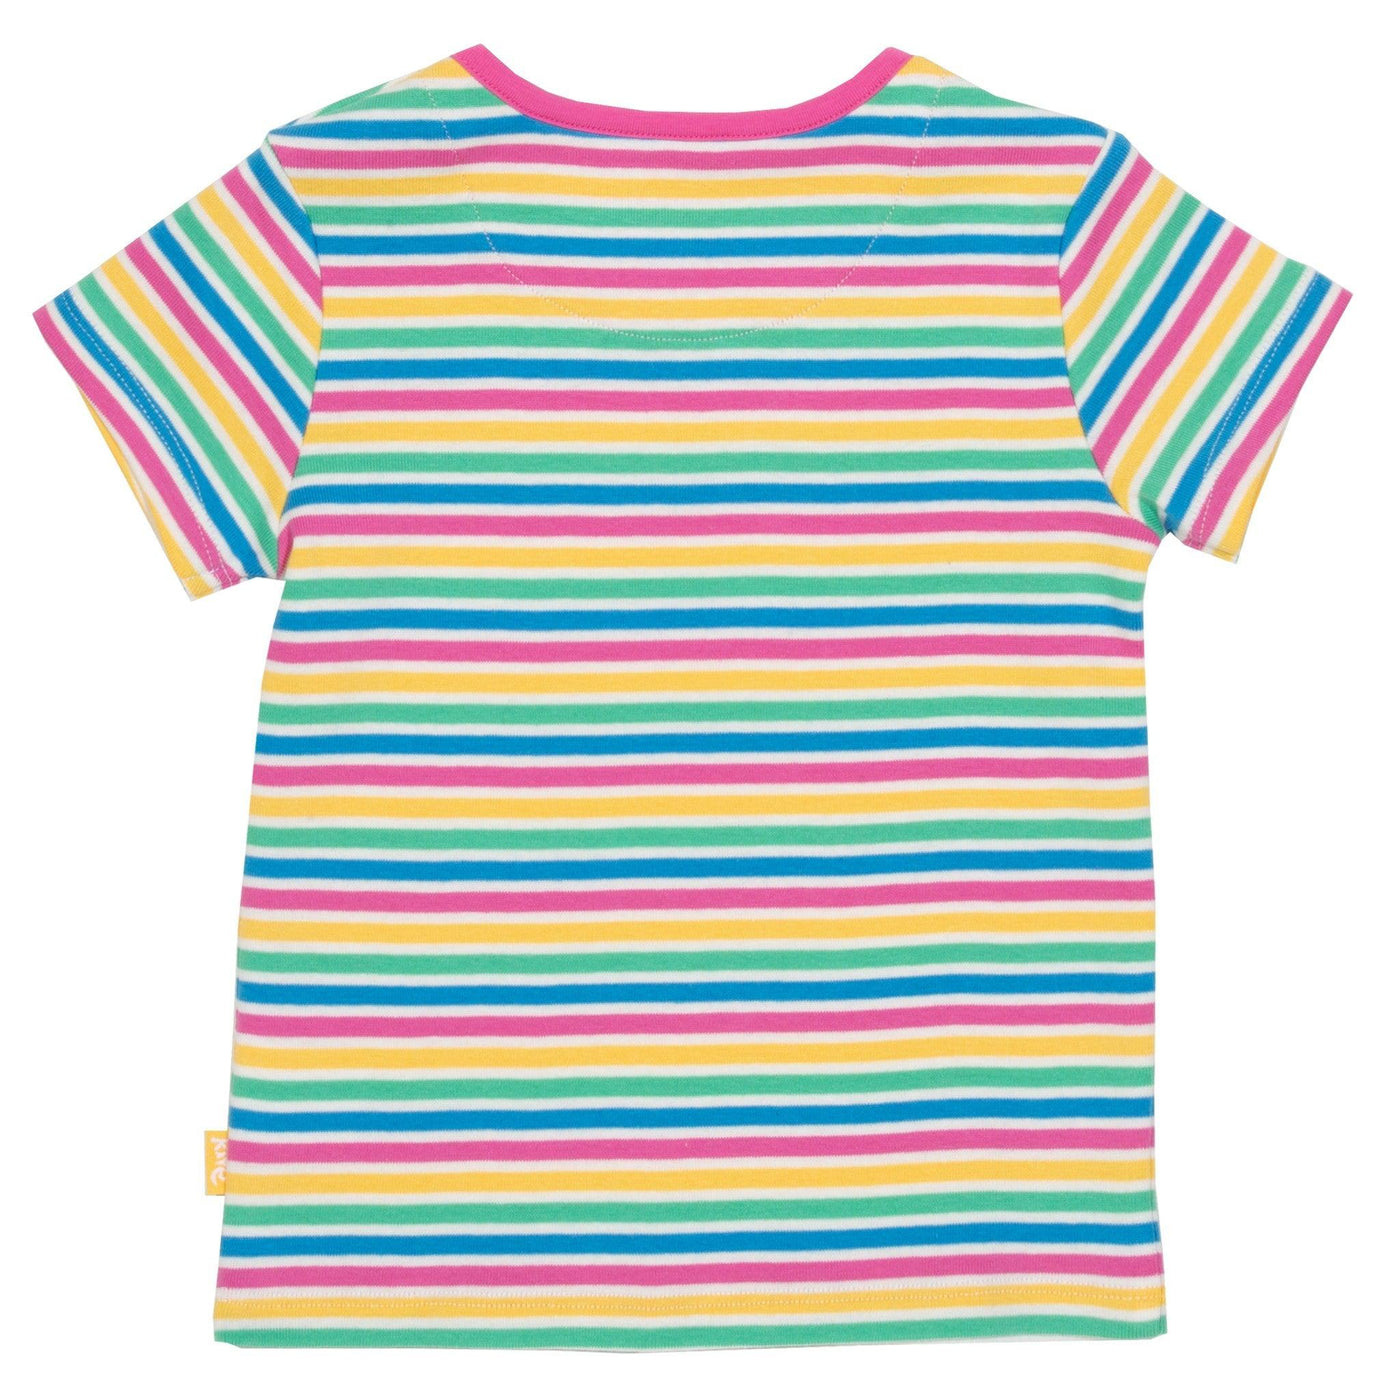 Kite Mini Bright Stripe T-shirt